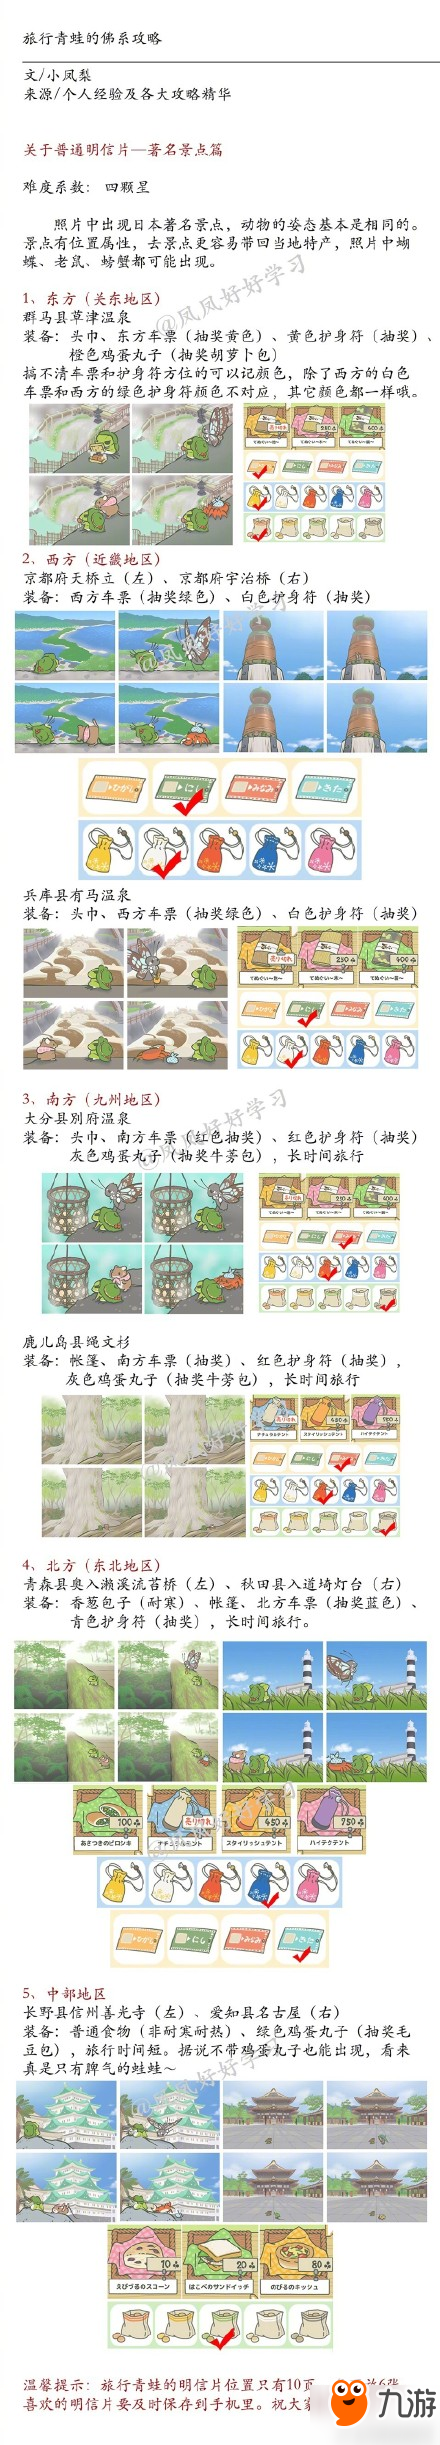 旅行的青蛙怎么设置中文 最全旅行青蛙游戏攻略翻译